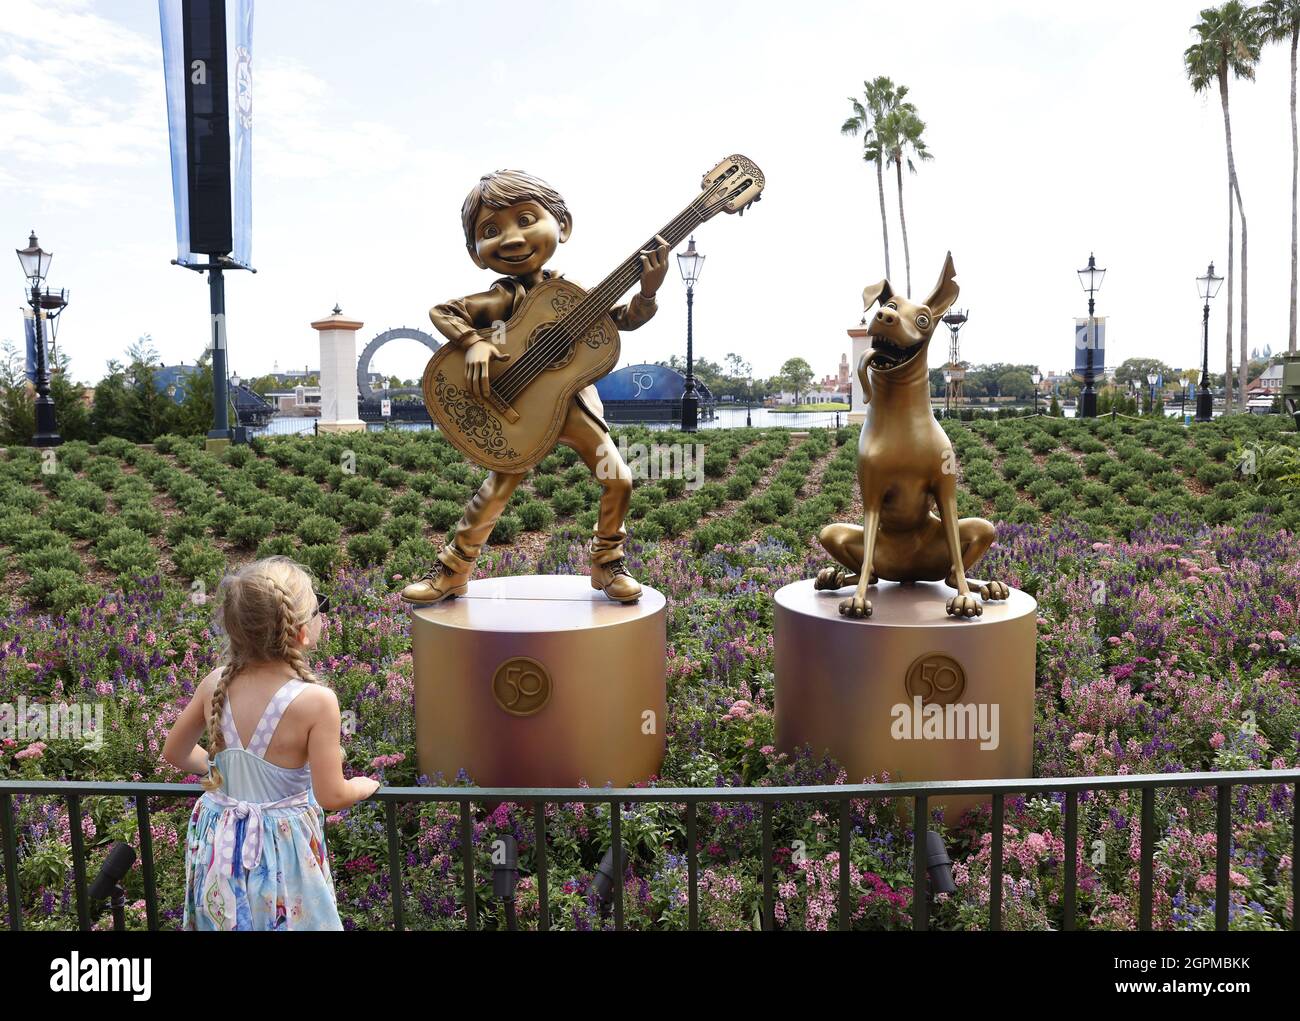 Orlando, États-Unis. 29 septembre 2021. Les statues de Rodel et Dante du film Coco font partie de 50 sculptures dorées de personnages Disney exposées à Epcot et dans d'autres parcs thématiques de Disney lors de la « célébration la plus magique du monde », le 50e anniversaire de Walt Disney World Resort ! Le mercredi 29 septembre 2021 à Orlando, en Floride. Photo de John Angelillo/UPI crédit: UPI/Alay Live News Banque D'Images